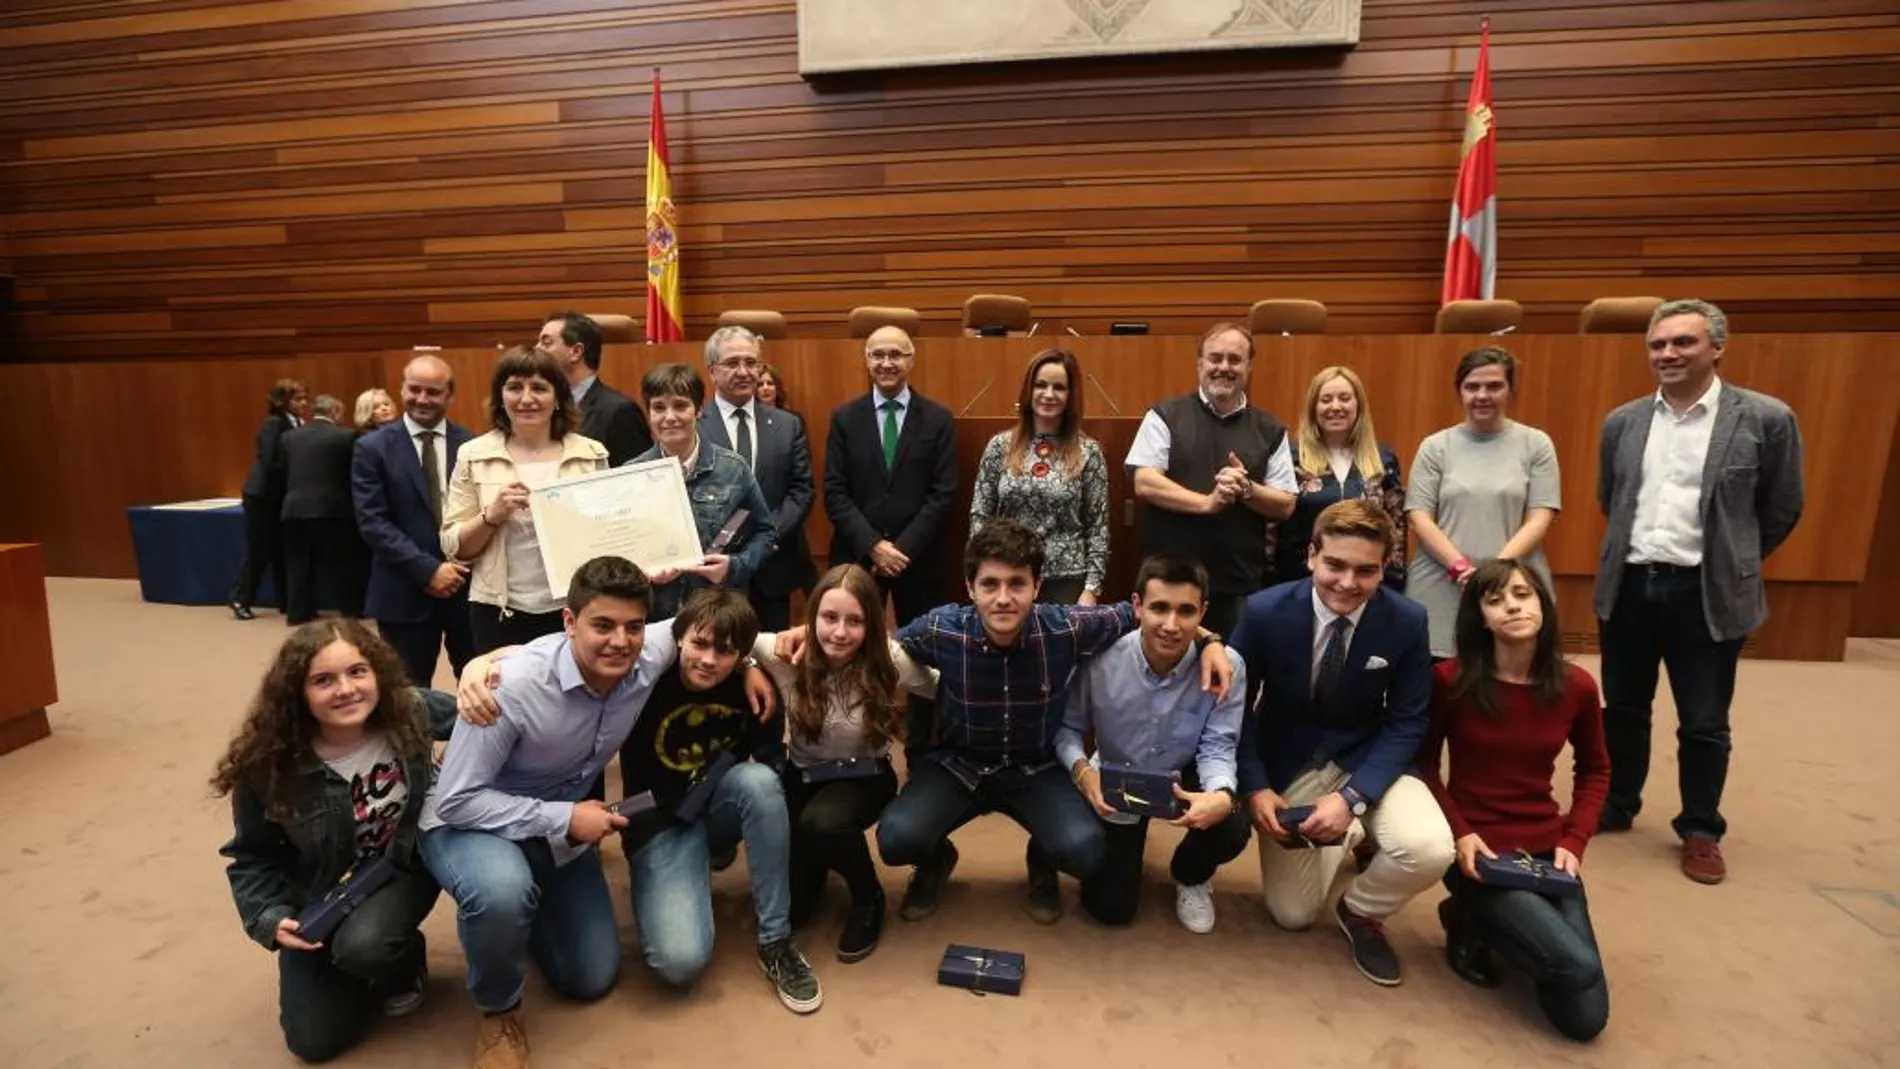 Fernando Rey, Silvia Clemente y representantes de las Cortes a los ganadores de la Liga de Debate de Bachillerato, el IES Lancia de León